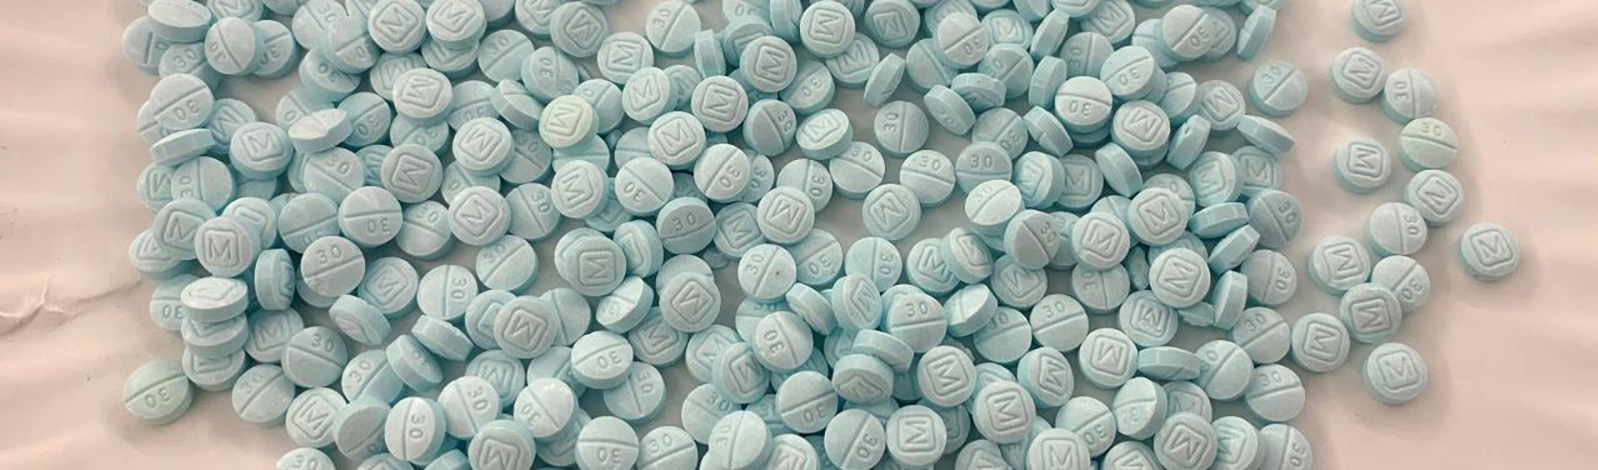 EUA responsabilizam México e China por overdoses de fentanil entre estadunidenses